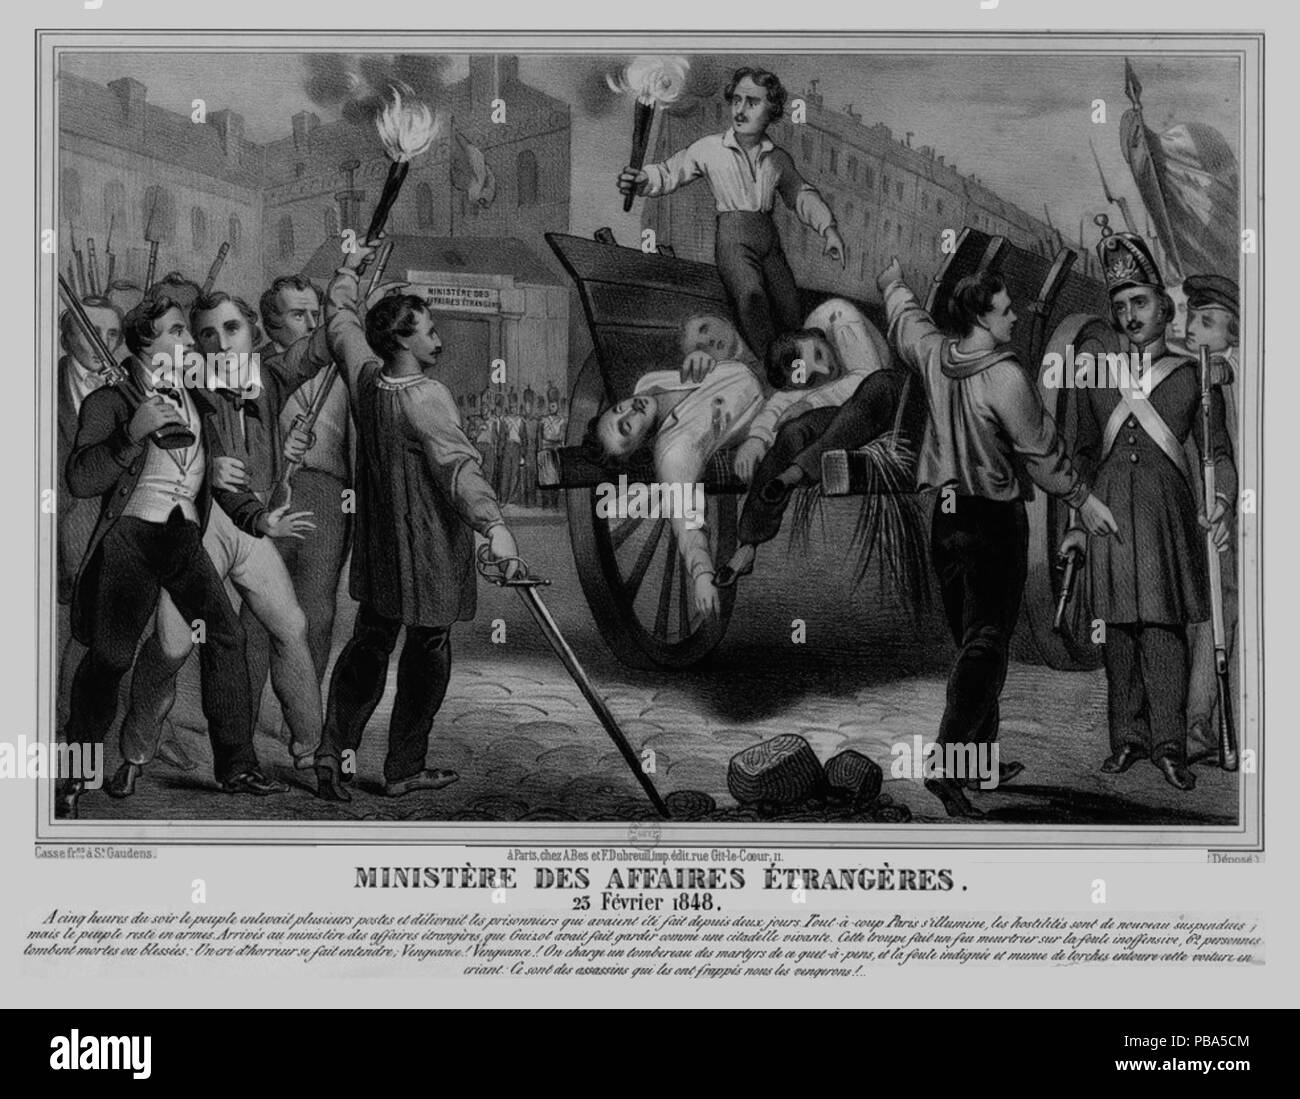 1047 Ministère des Affaires étrangères 23 février 1848 Stock Photo